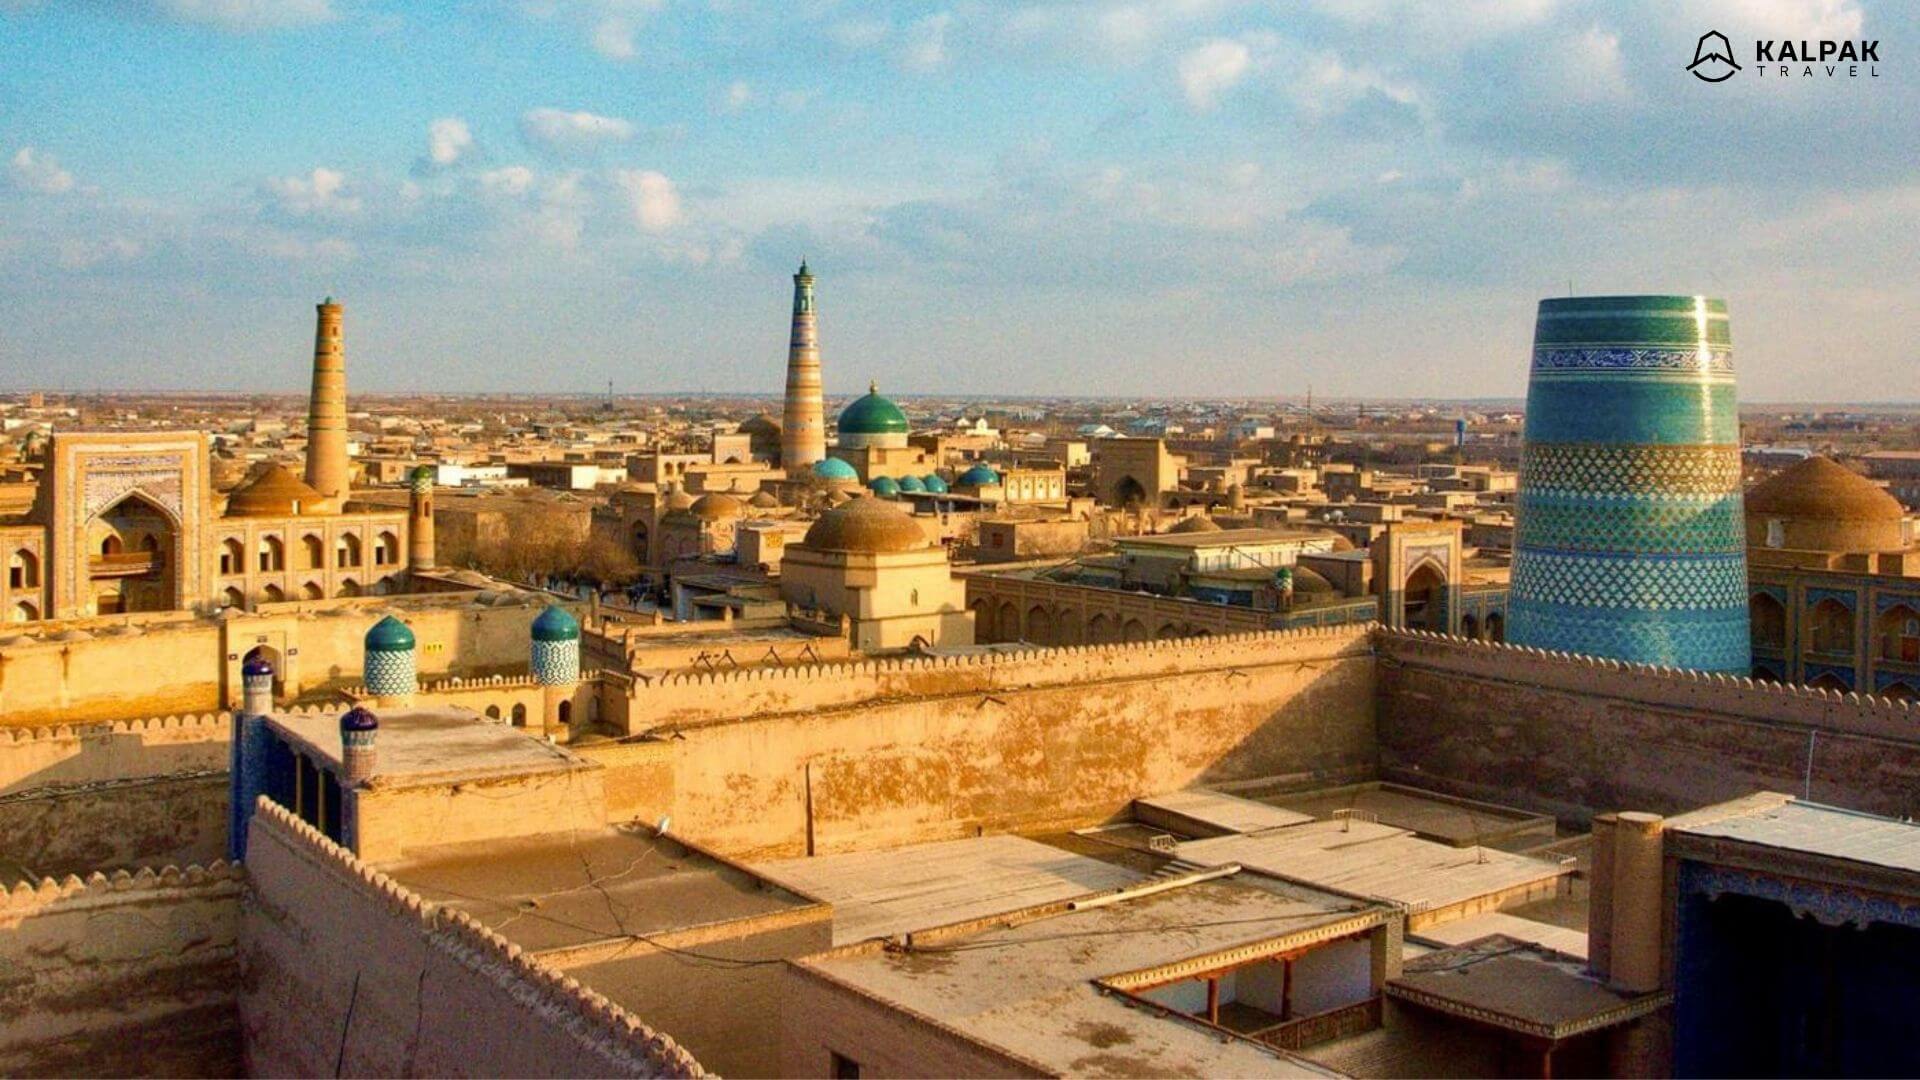 Khiva is a Silk Road city in Uzbekistan